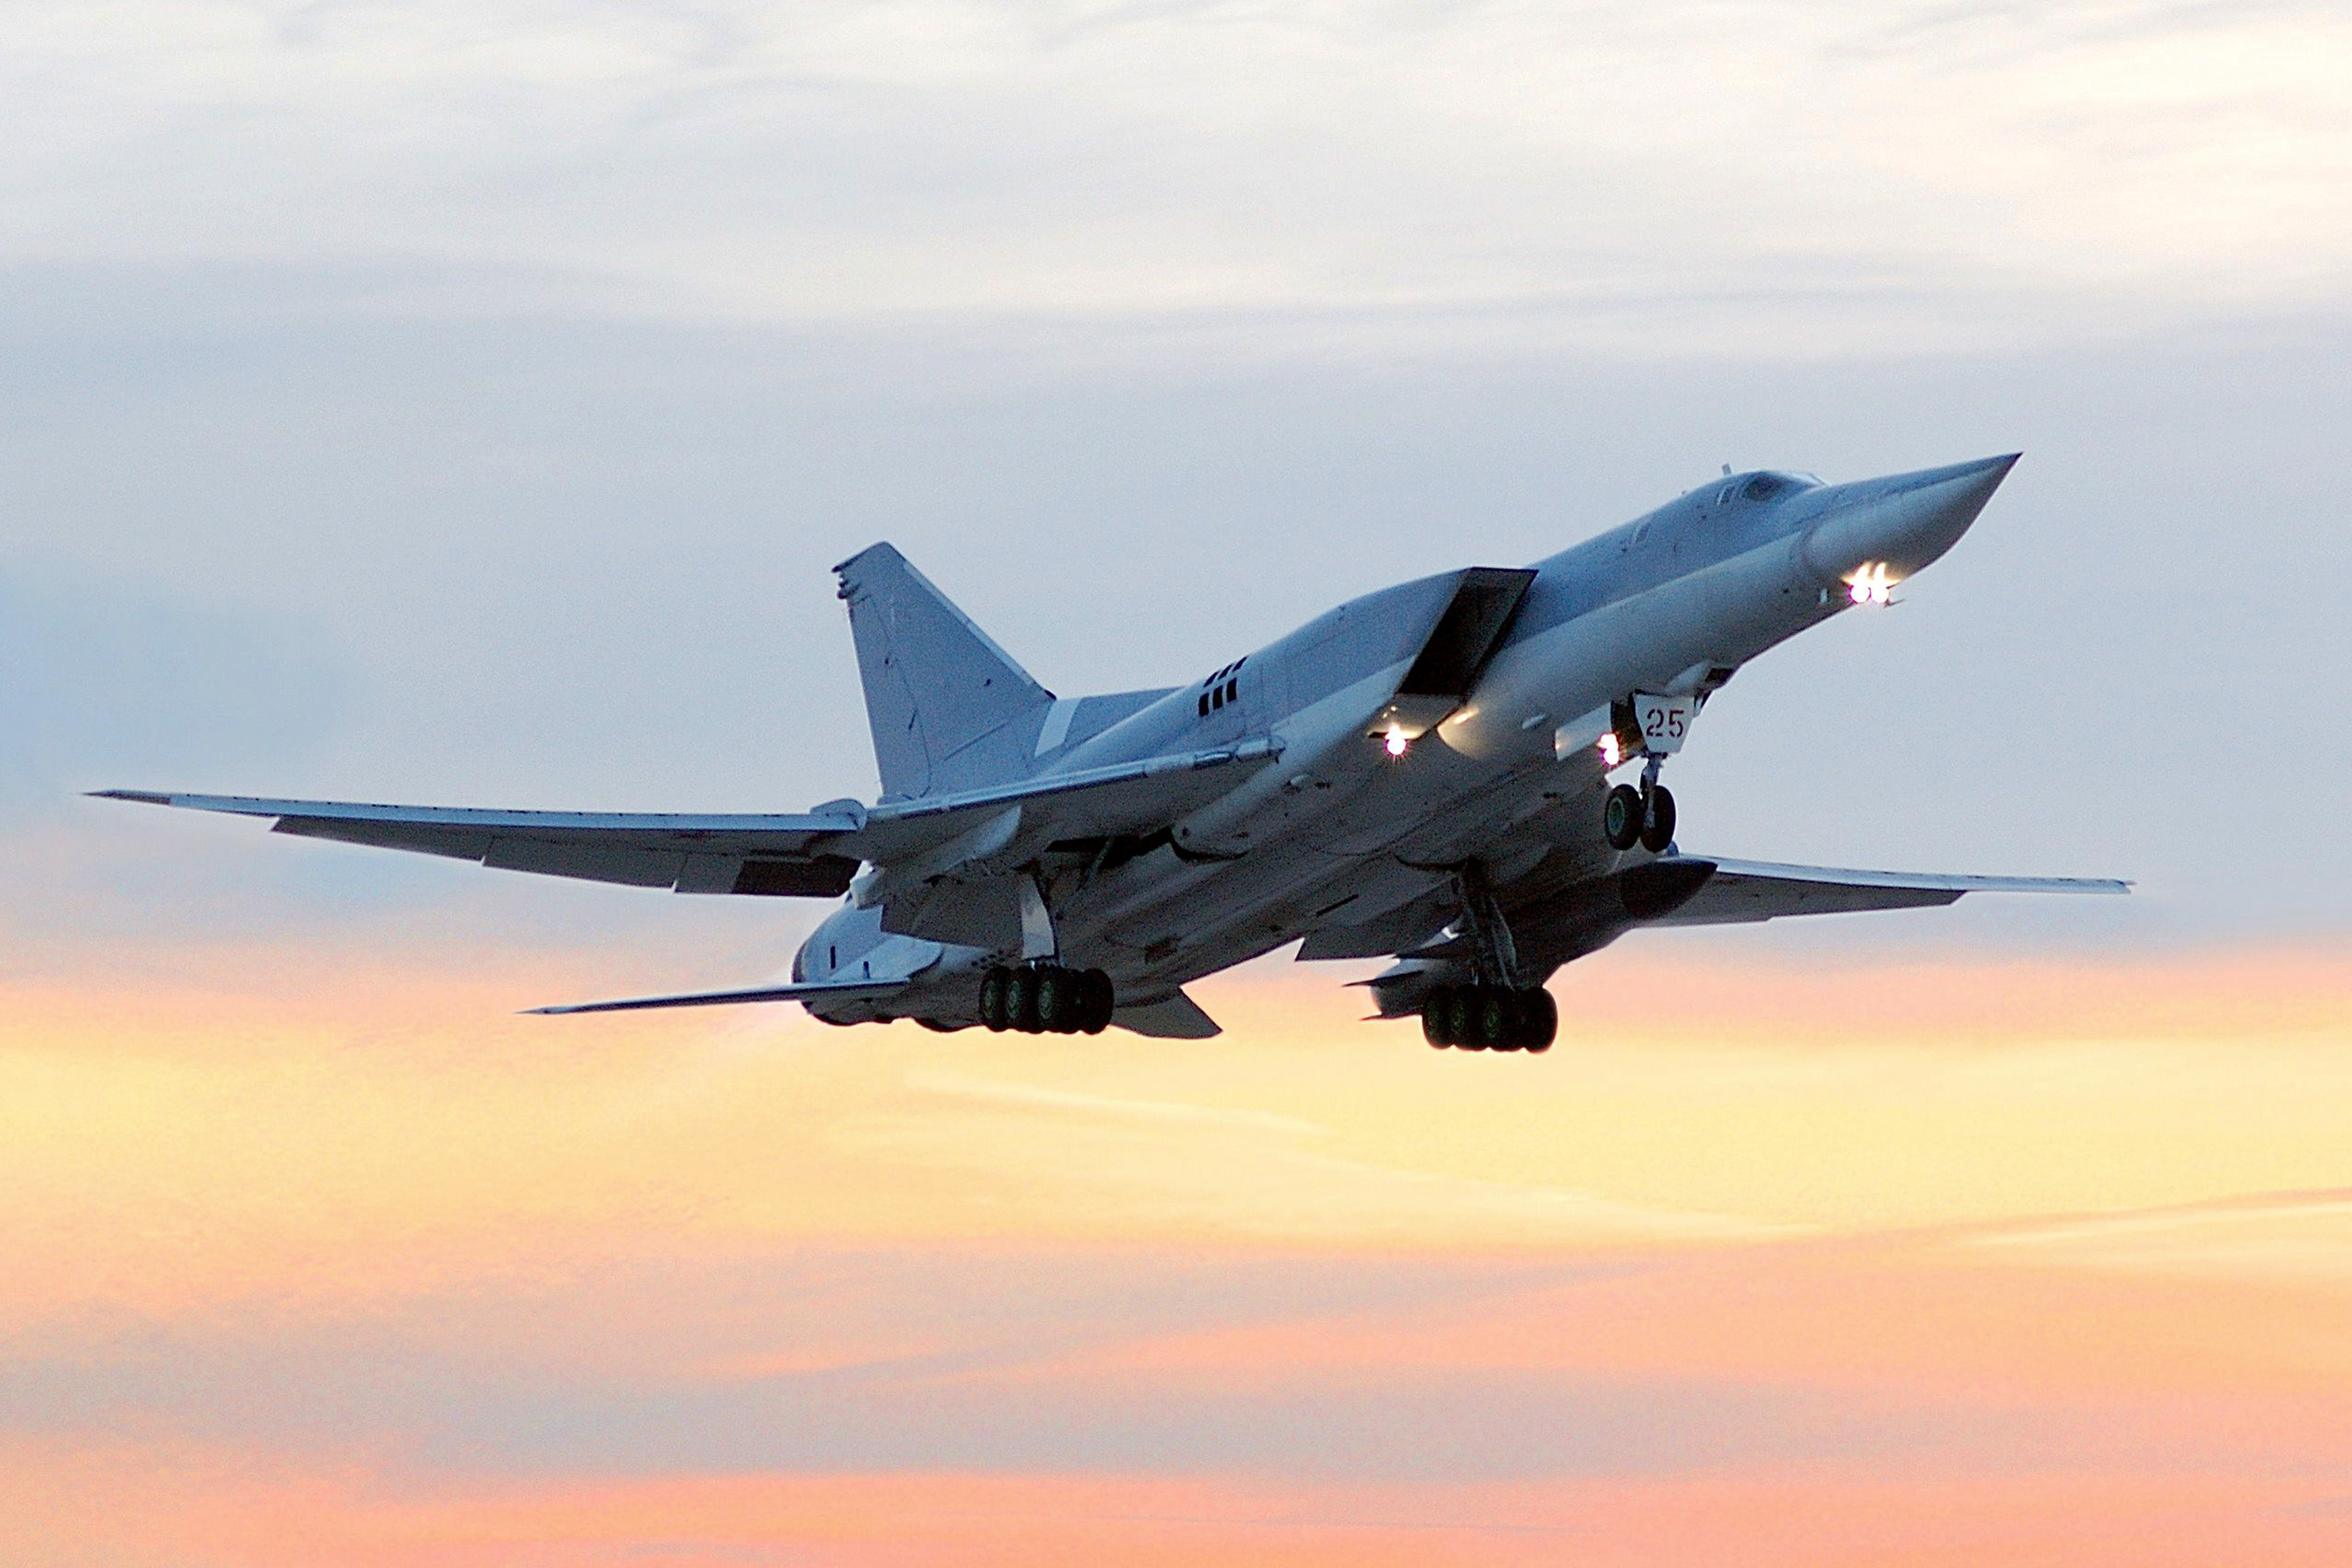 Túpolev Tu-22, sobrevoa a região russa de Saratov.